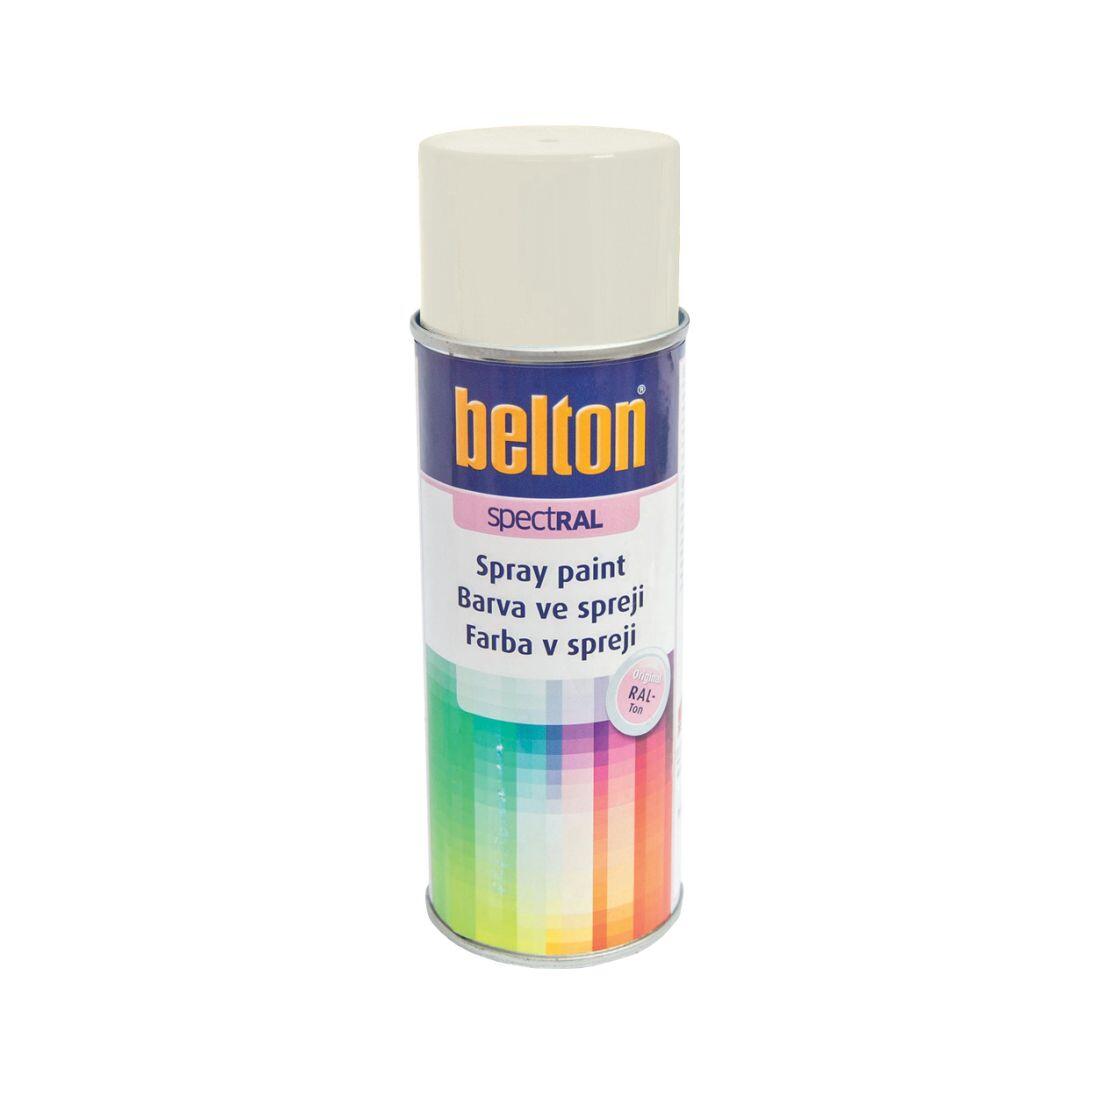 barva ve spreji BELTON RAL 9010, 400ml BÍ 0.31 Kg MAXMIX Sklad14 825130 16